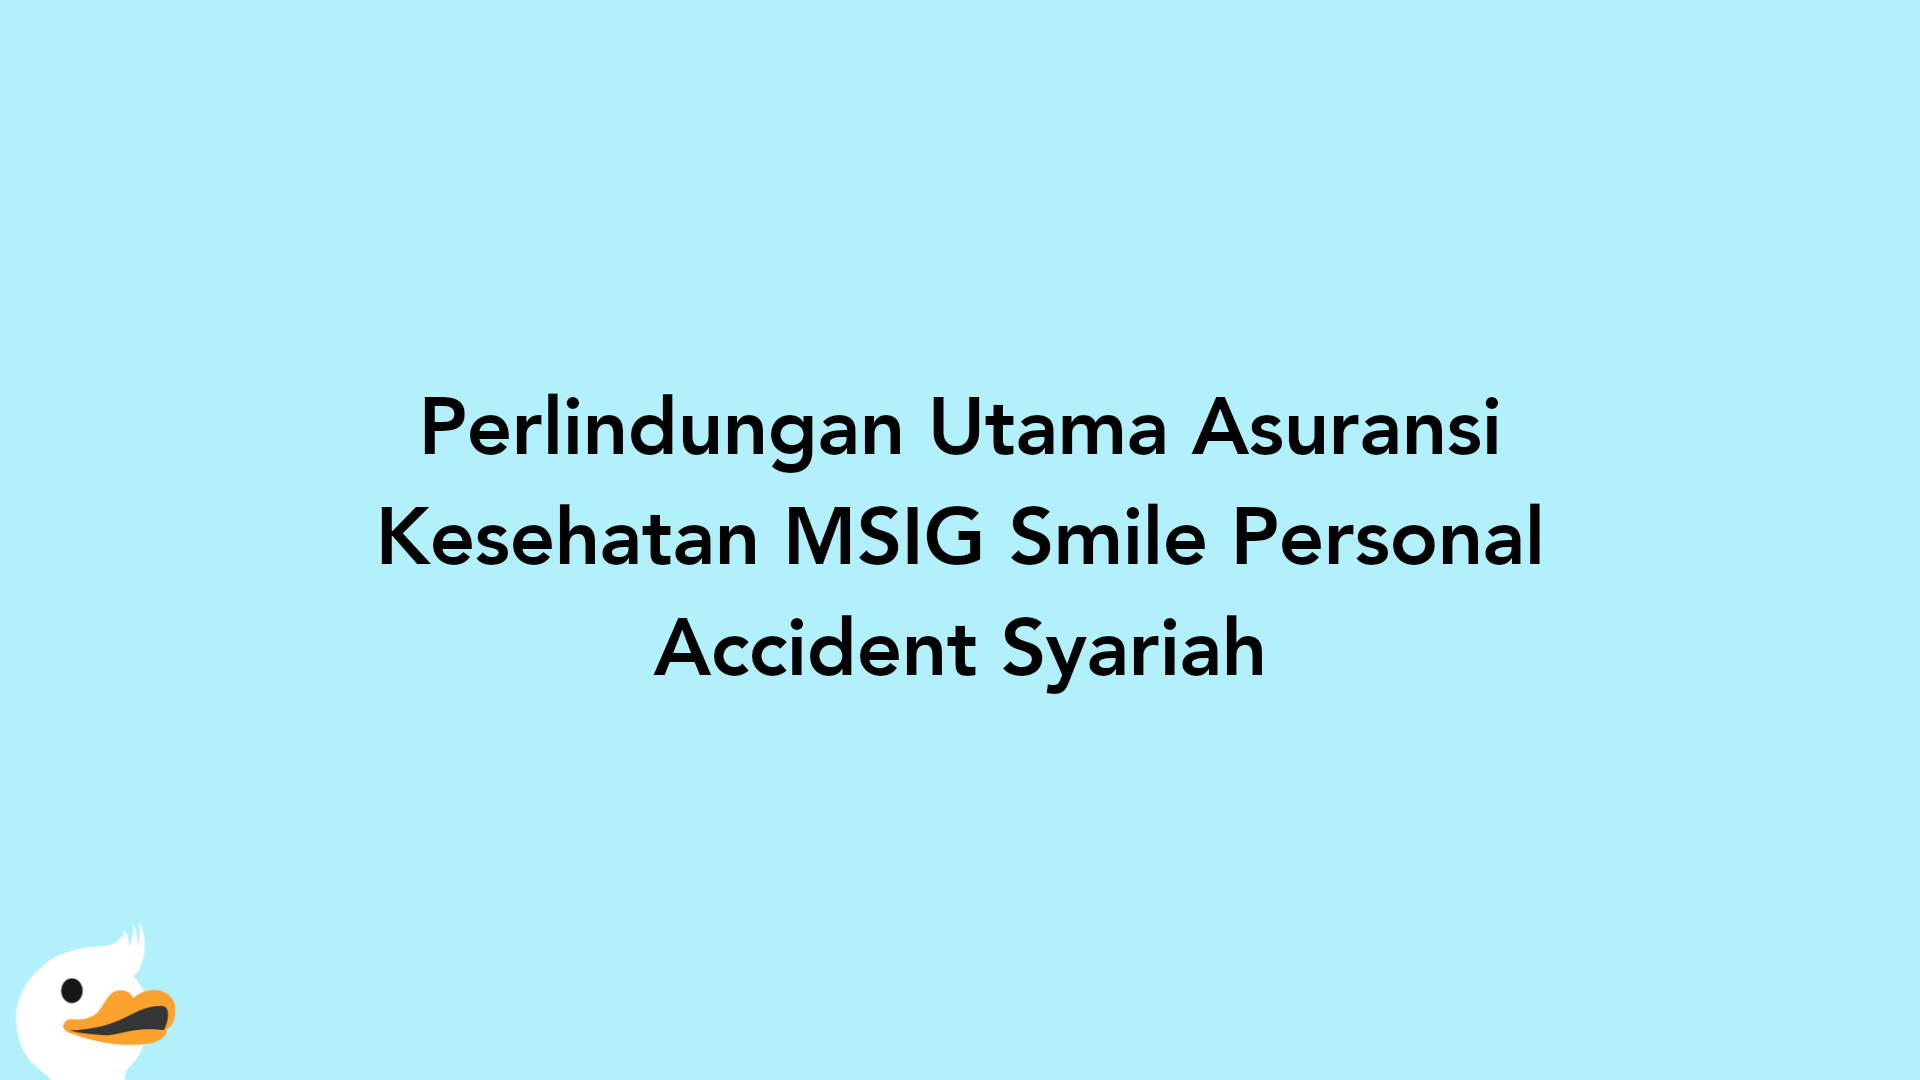 Perlindungan Utama Asuransi Kesehatan MSIG Smile Personal Accident Syariah